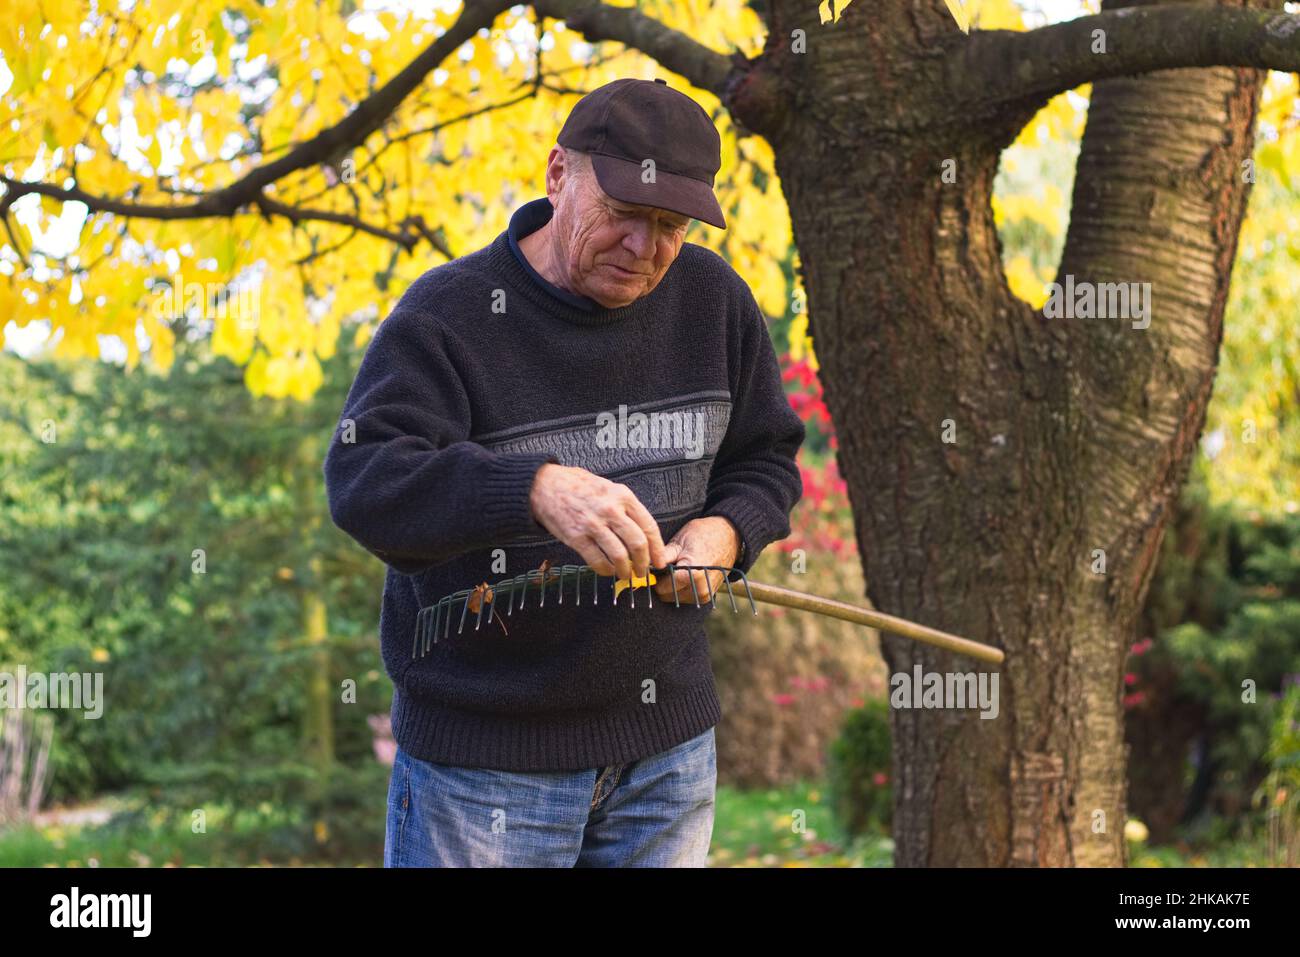 Retrato de un hombre mayor sonriente durante la limpieza del rastrillo de las hojas en otoño. El viejo granjero que rastriaba las hojas caídas en el jardín Foto de stock